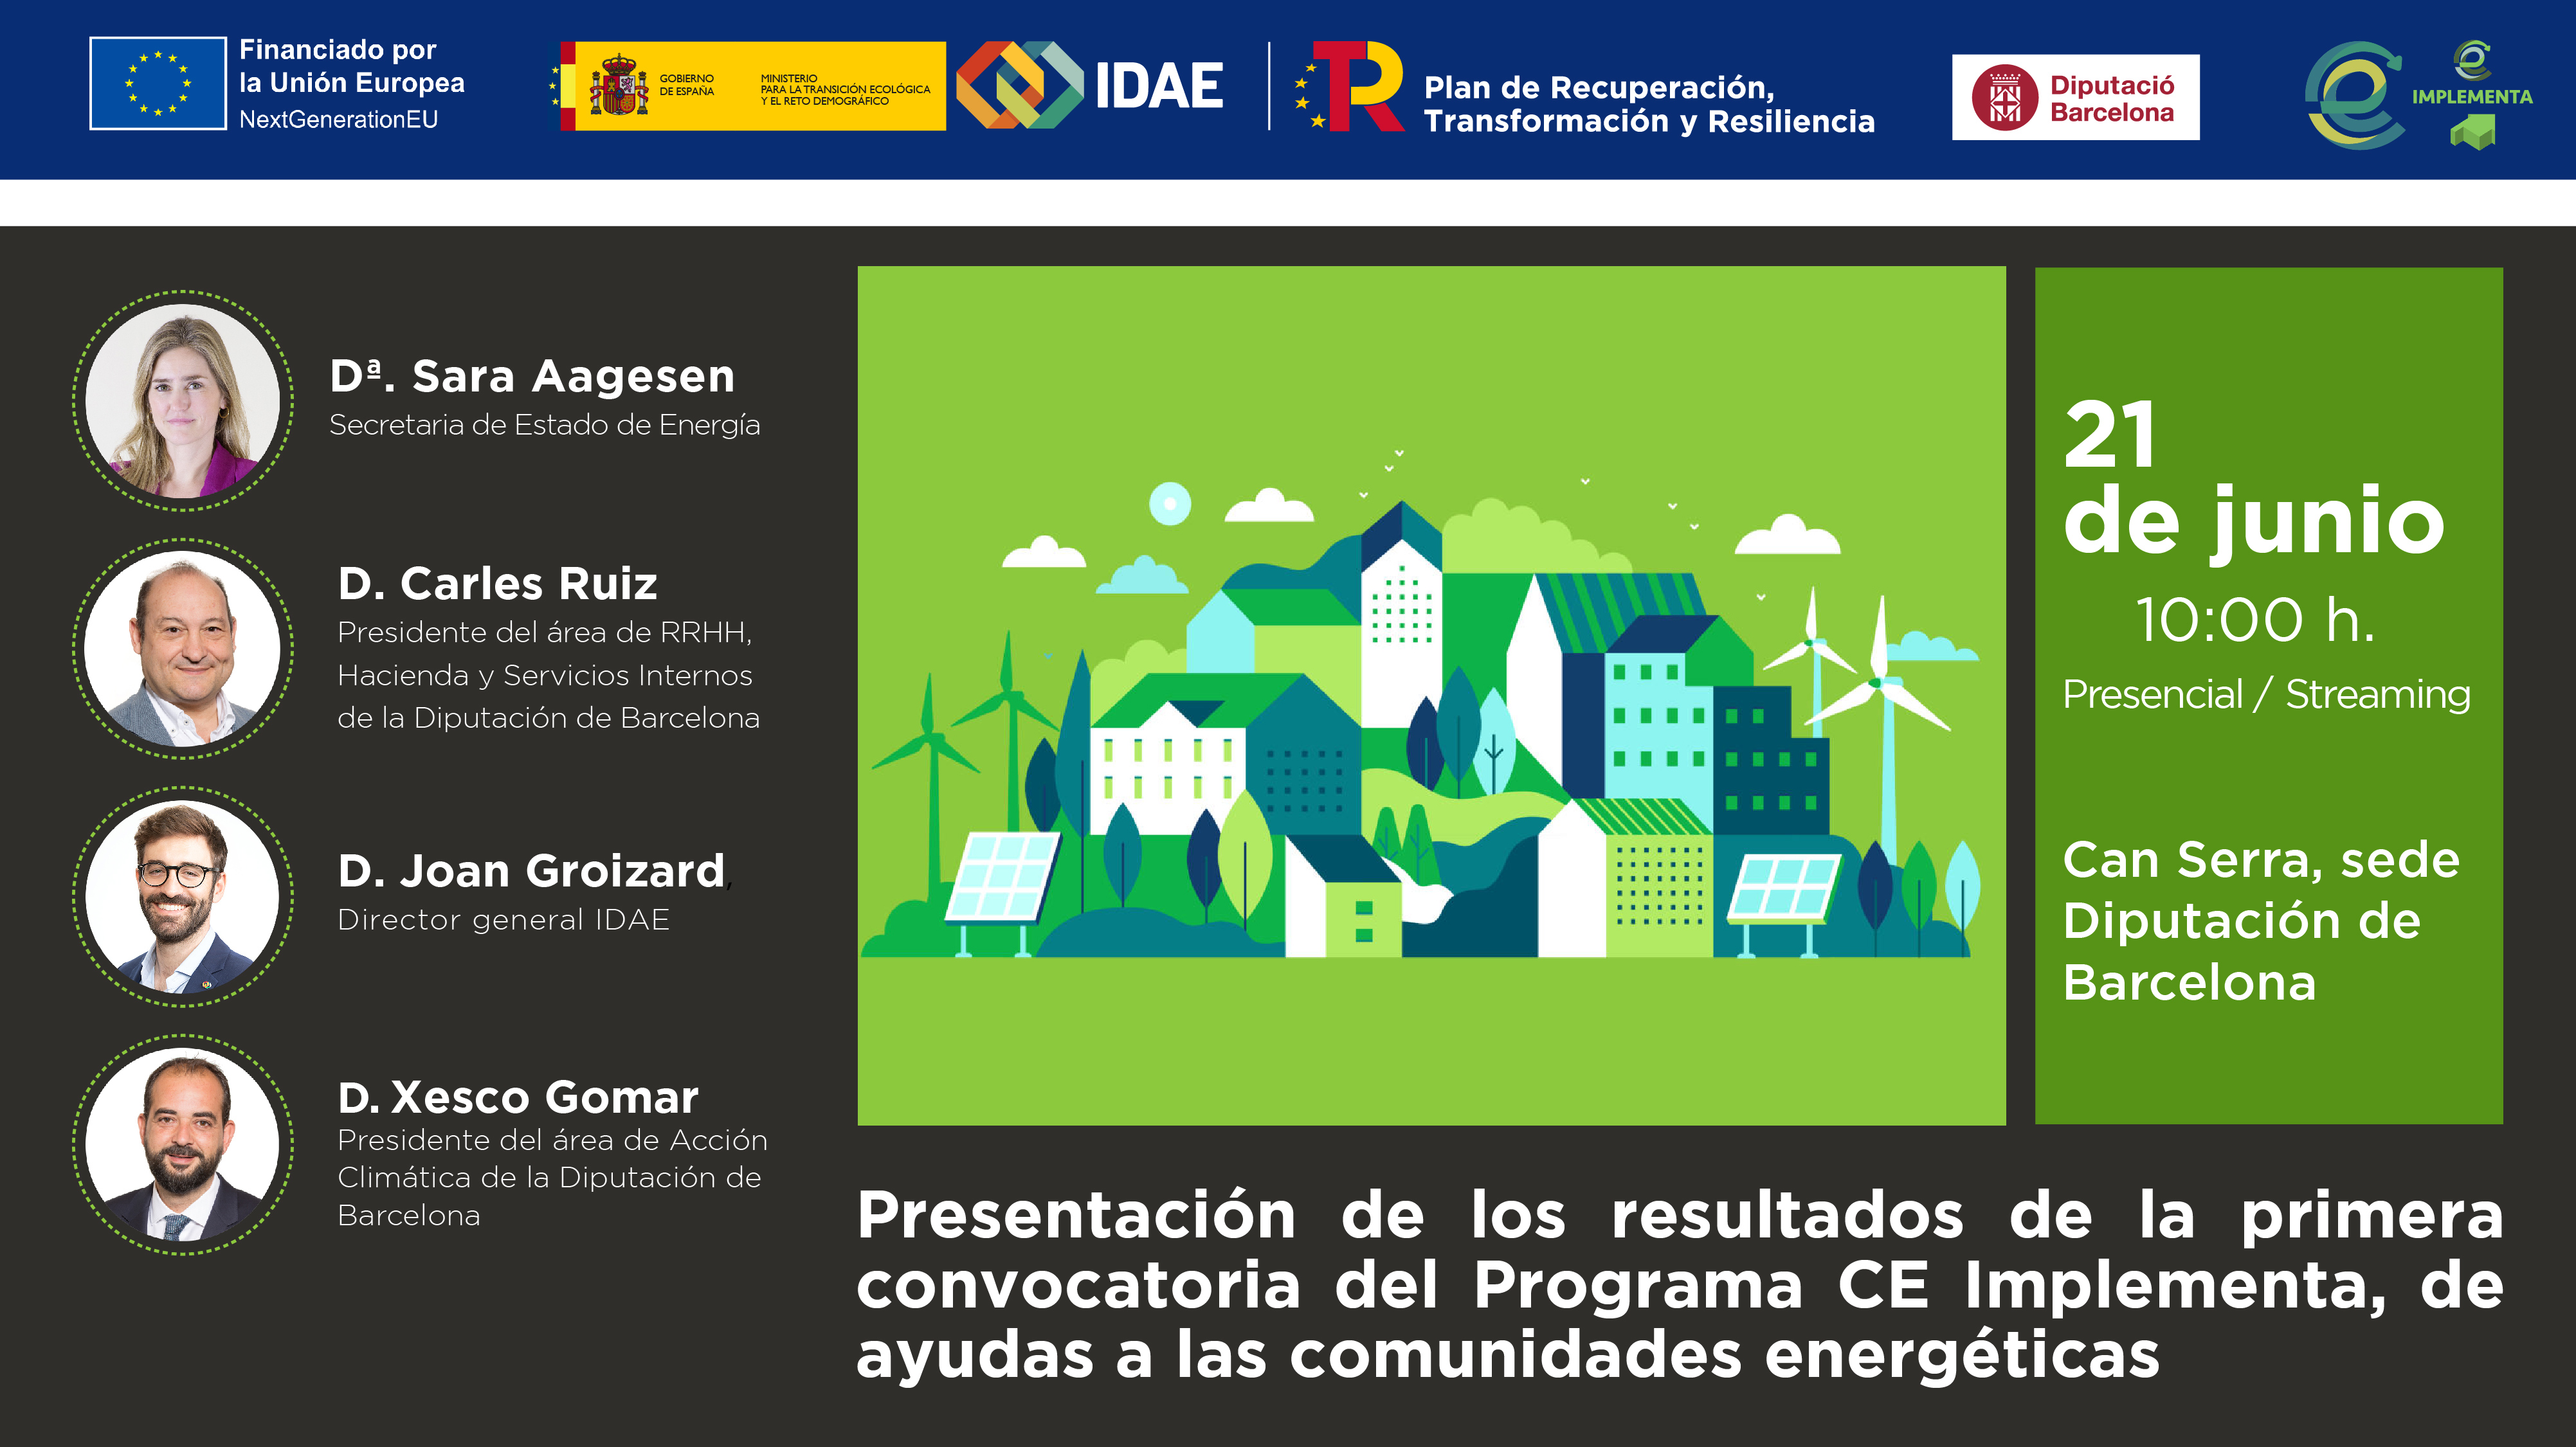 Jornada de presentación de los resultados de la primera convocatoria de la línea CE Implementa, de ayudas a las comunidades energéticas